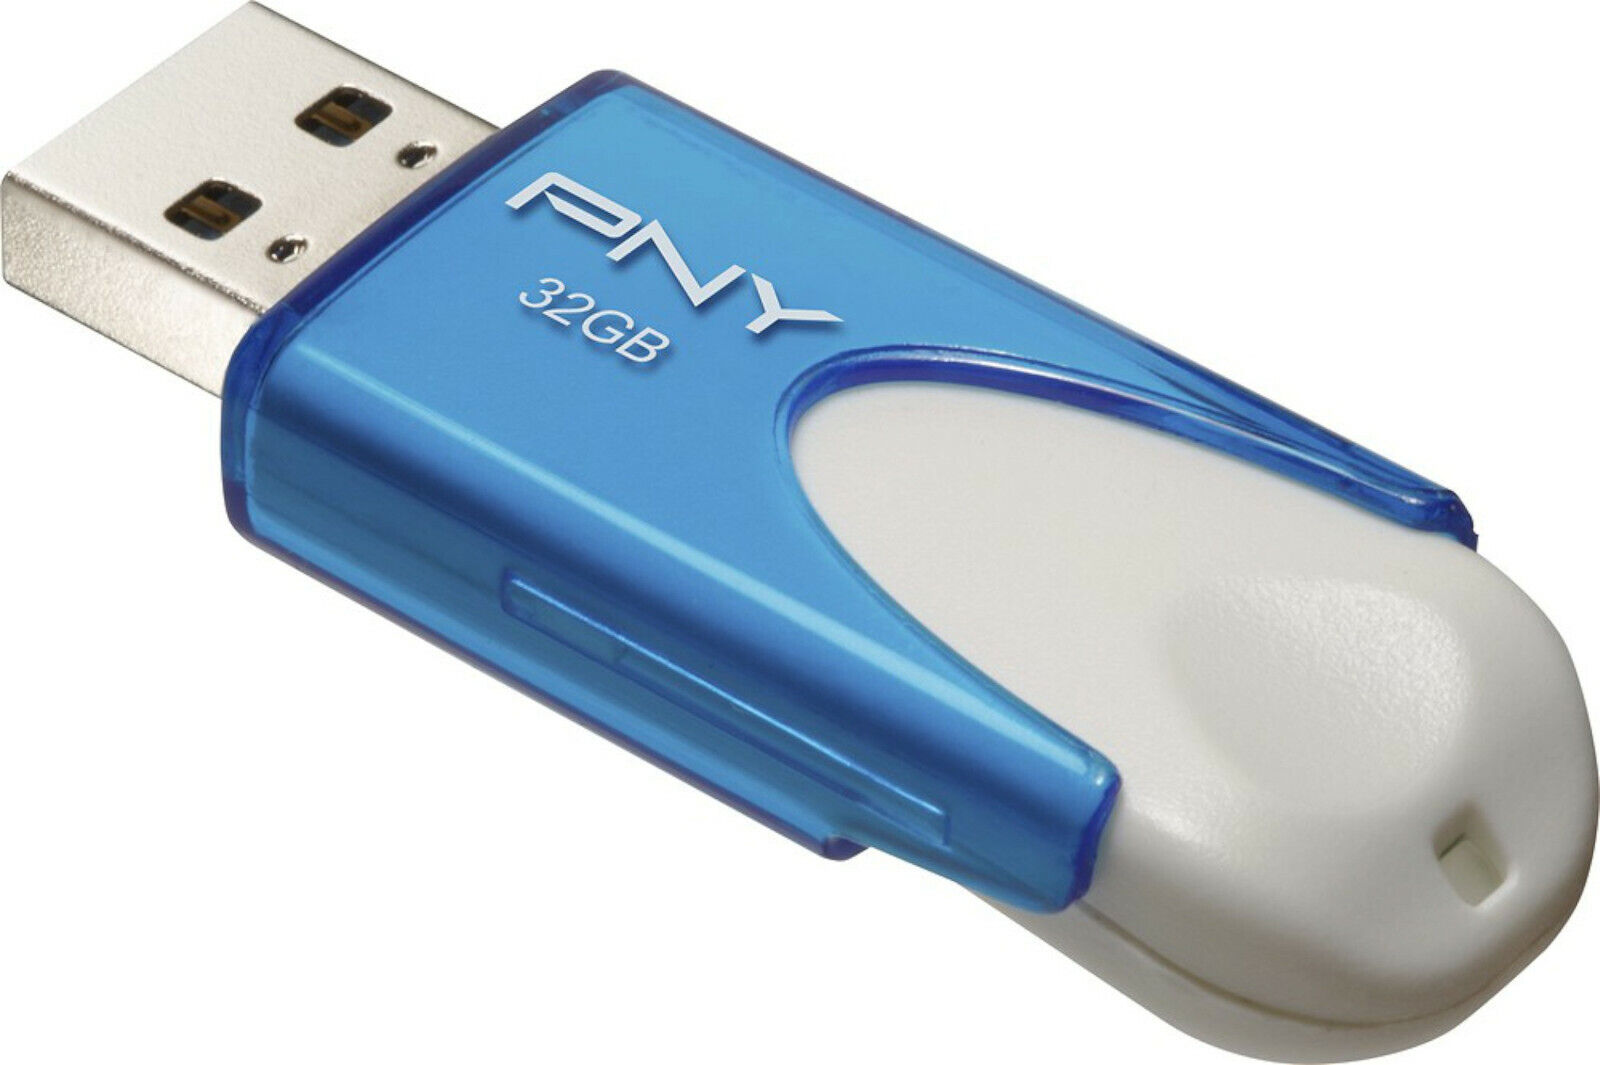 NEW PNY Attache 4 32GB USB 2.0 Flash Drive Blue/White P-FD32GATT4BW-GE thumb